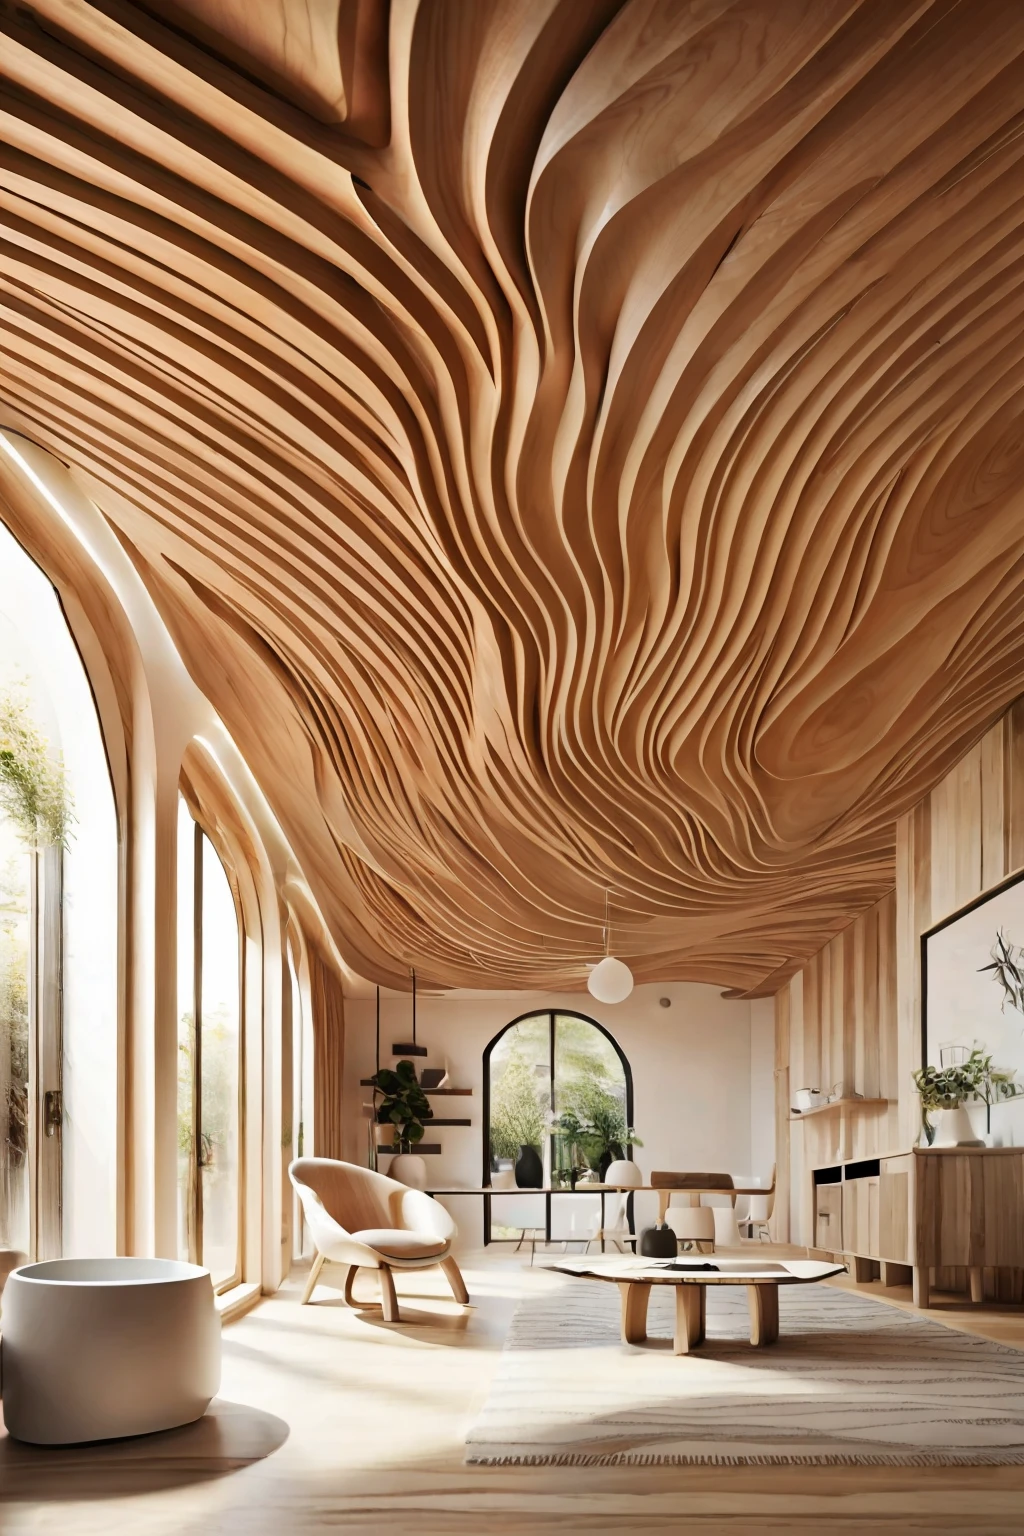 قاعة كبيرة بسقف خشبي مموج(photorealistic:1.2)فوضى الأخشاب الطافية